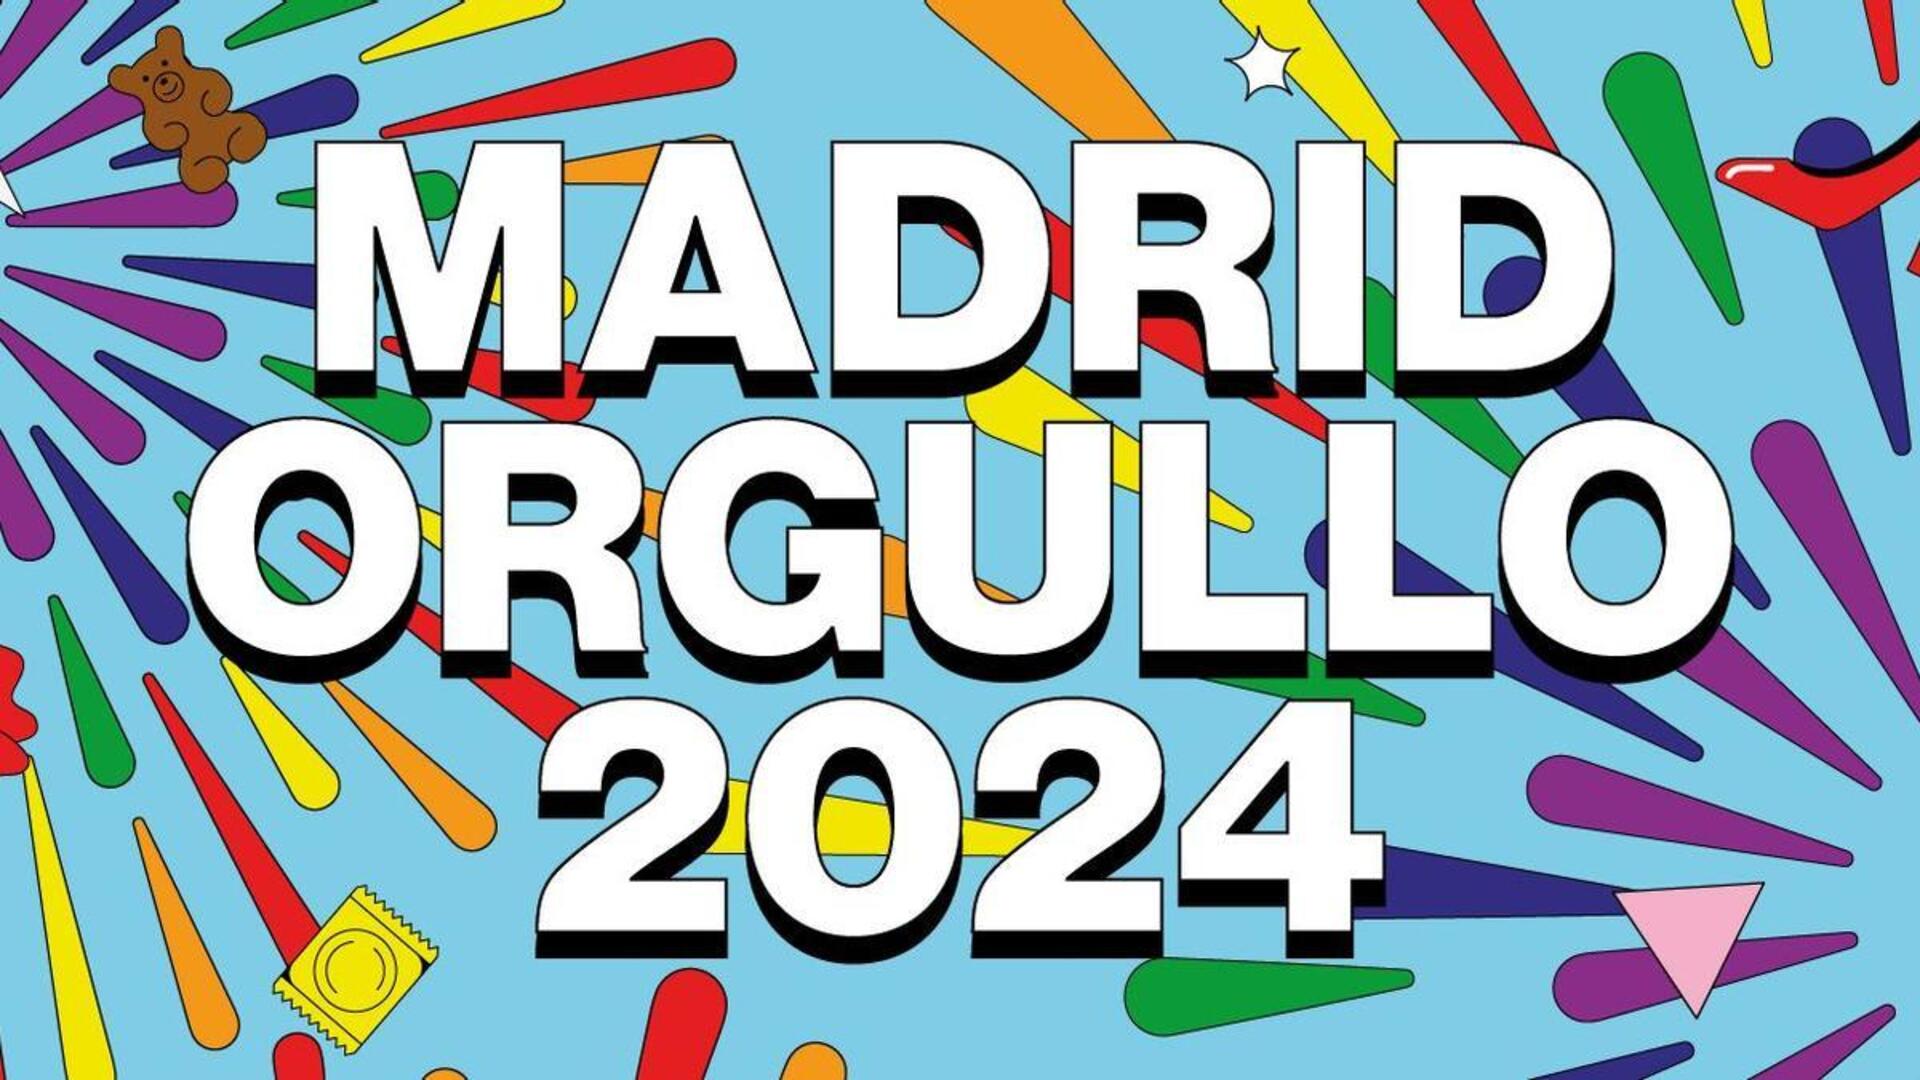 Este es cartel del Orgullo 2024 por el que el alcalde de Madrid está siendo muy criticado